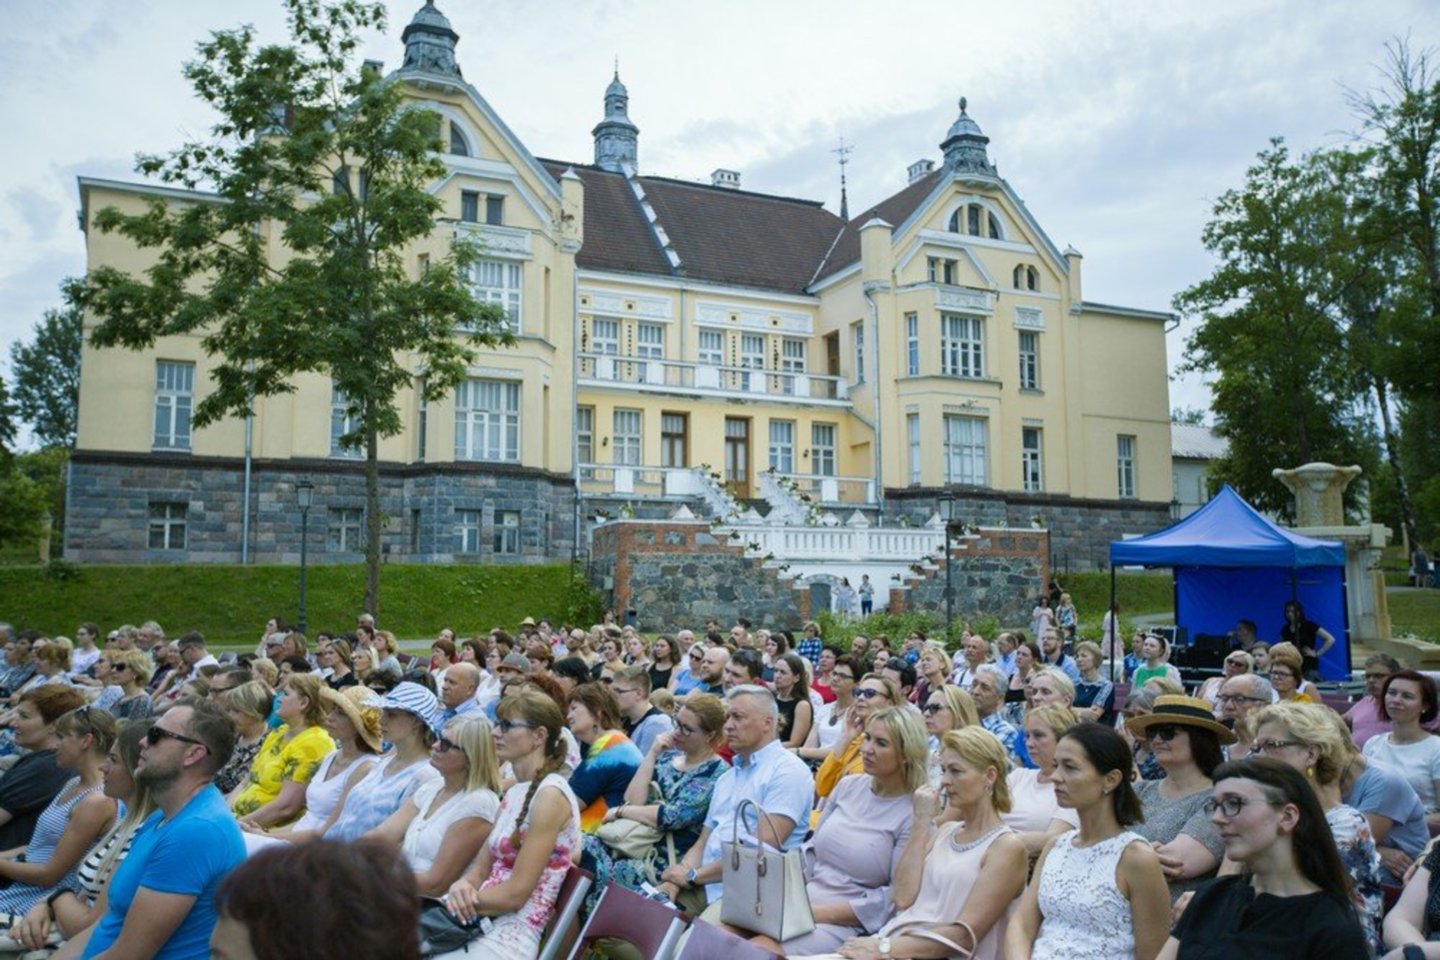  XVI tarptautinis Chaimo Frenkelio vilos vasaros festivalis prasidėjo Kauno šokio teatro „Aura“ spektakliu „Norėčiau būt paparčio žiedu“. <br> E.Tamošiūno nuotr.